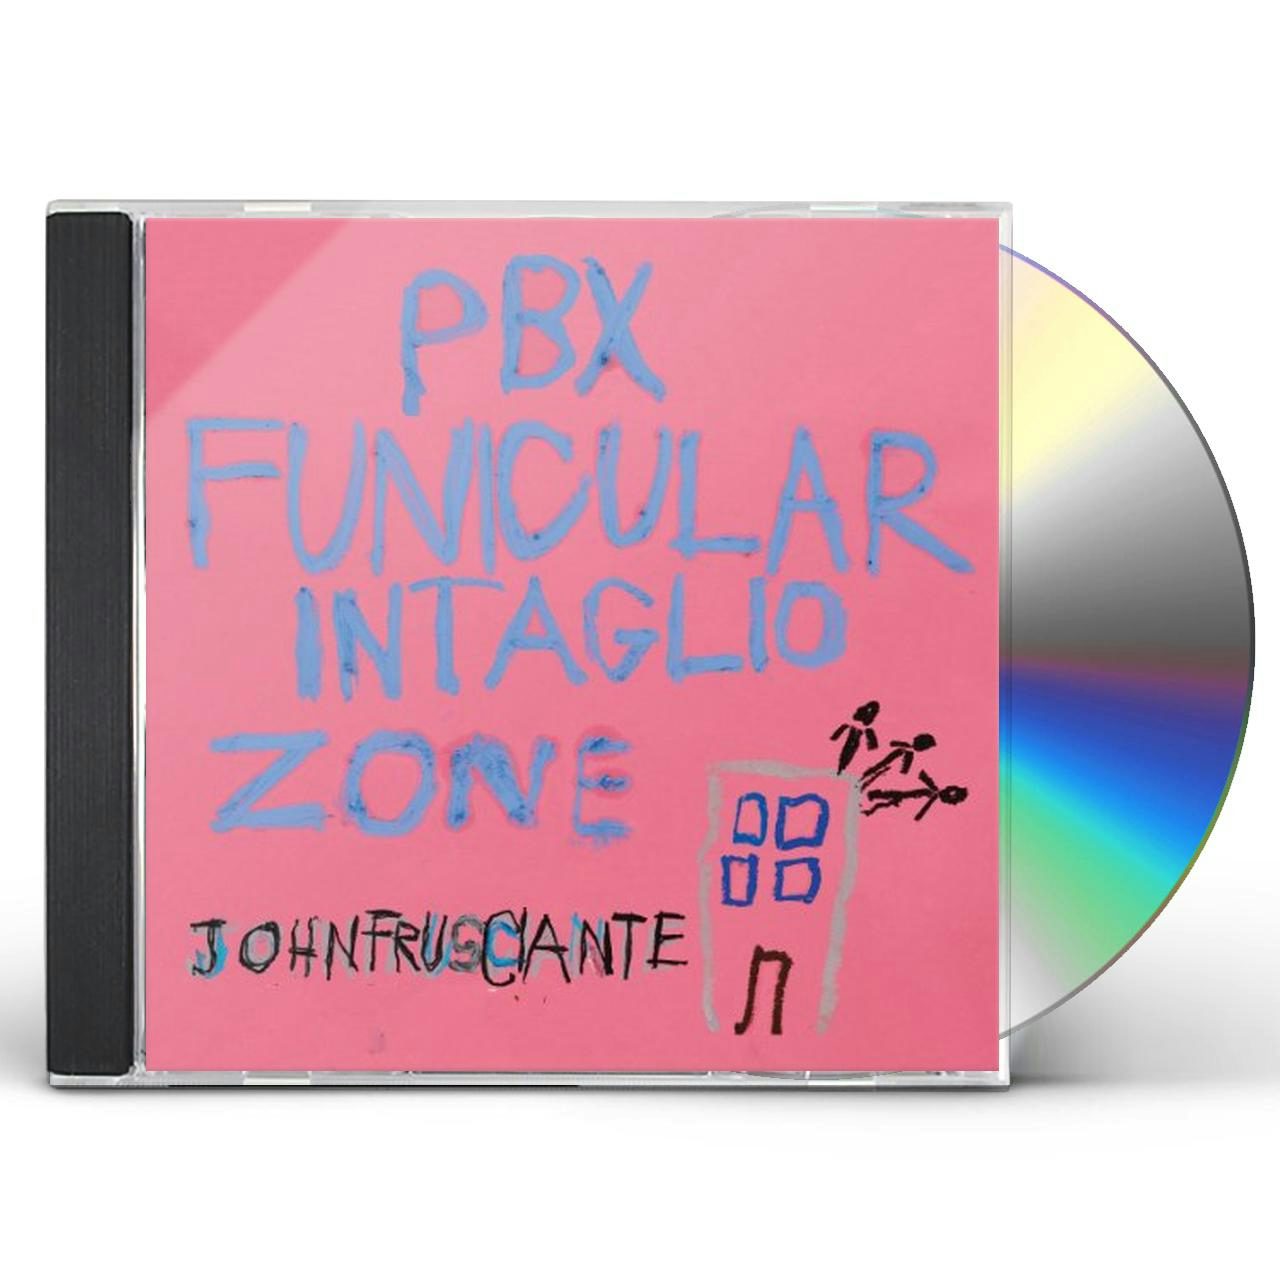 John Frusciante PBX Funicular Intaglio Zone Vinyl Record